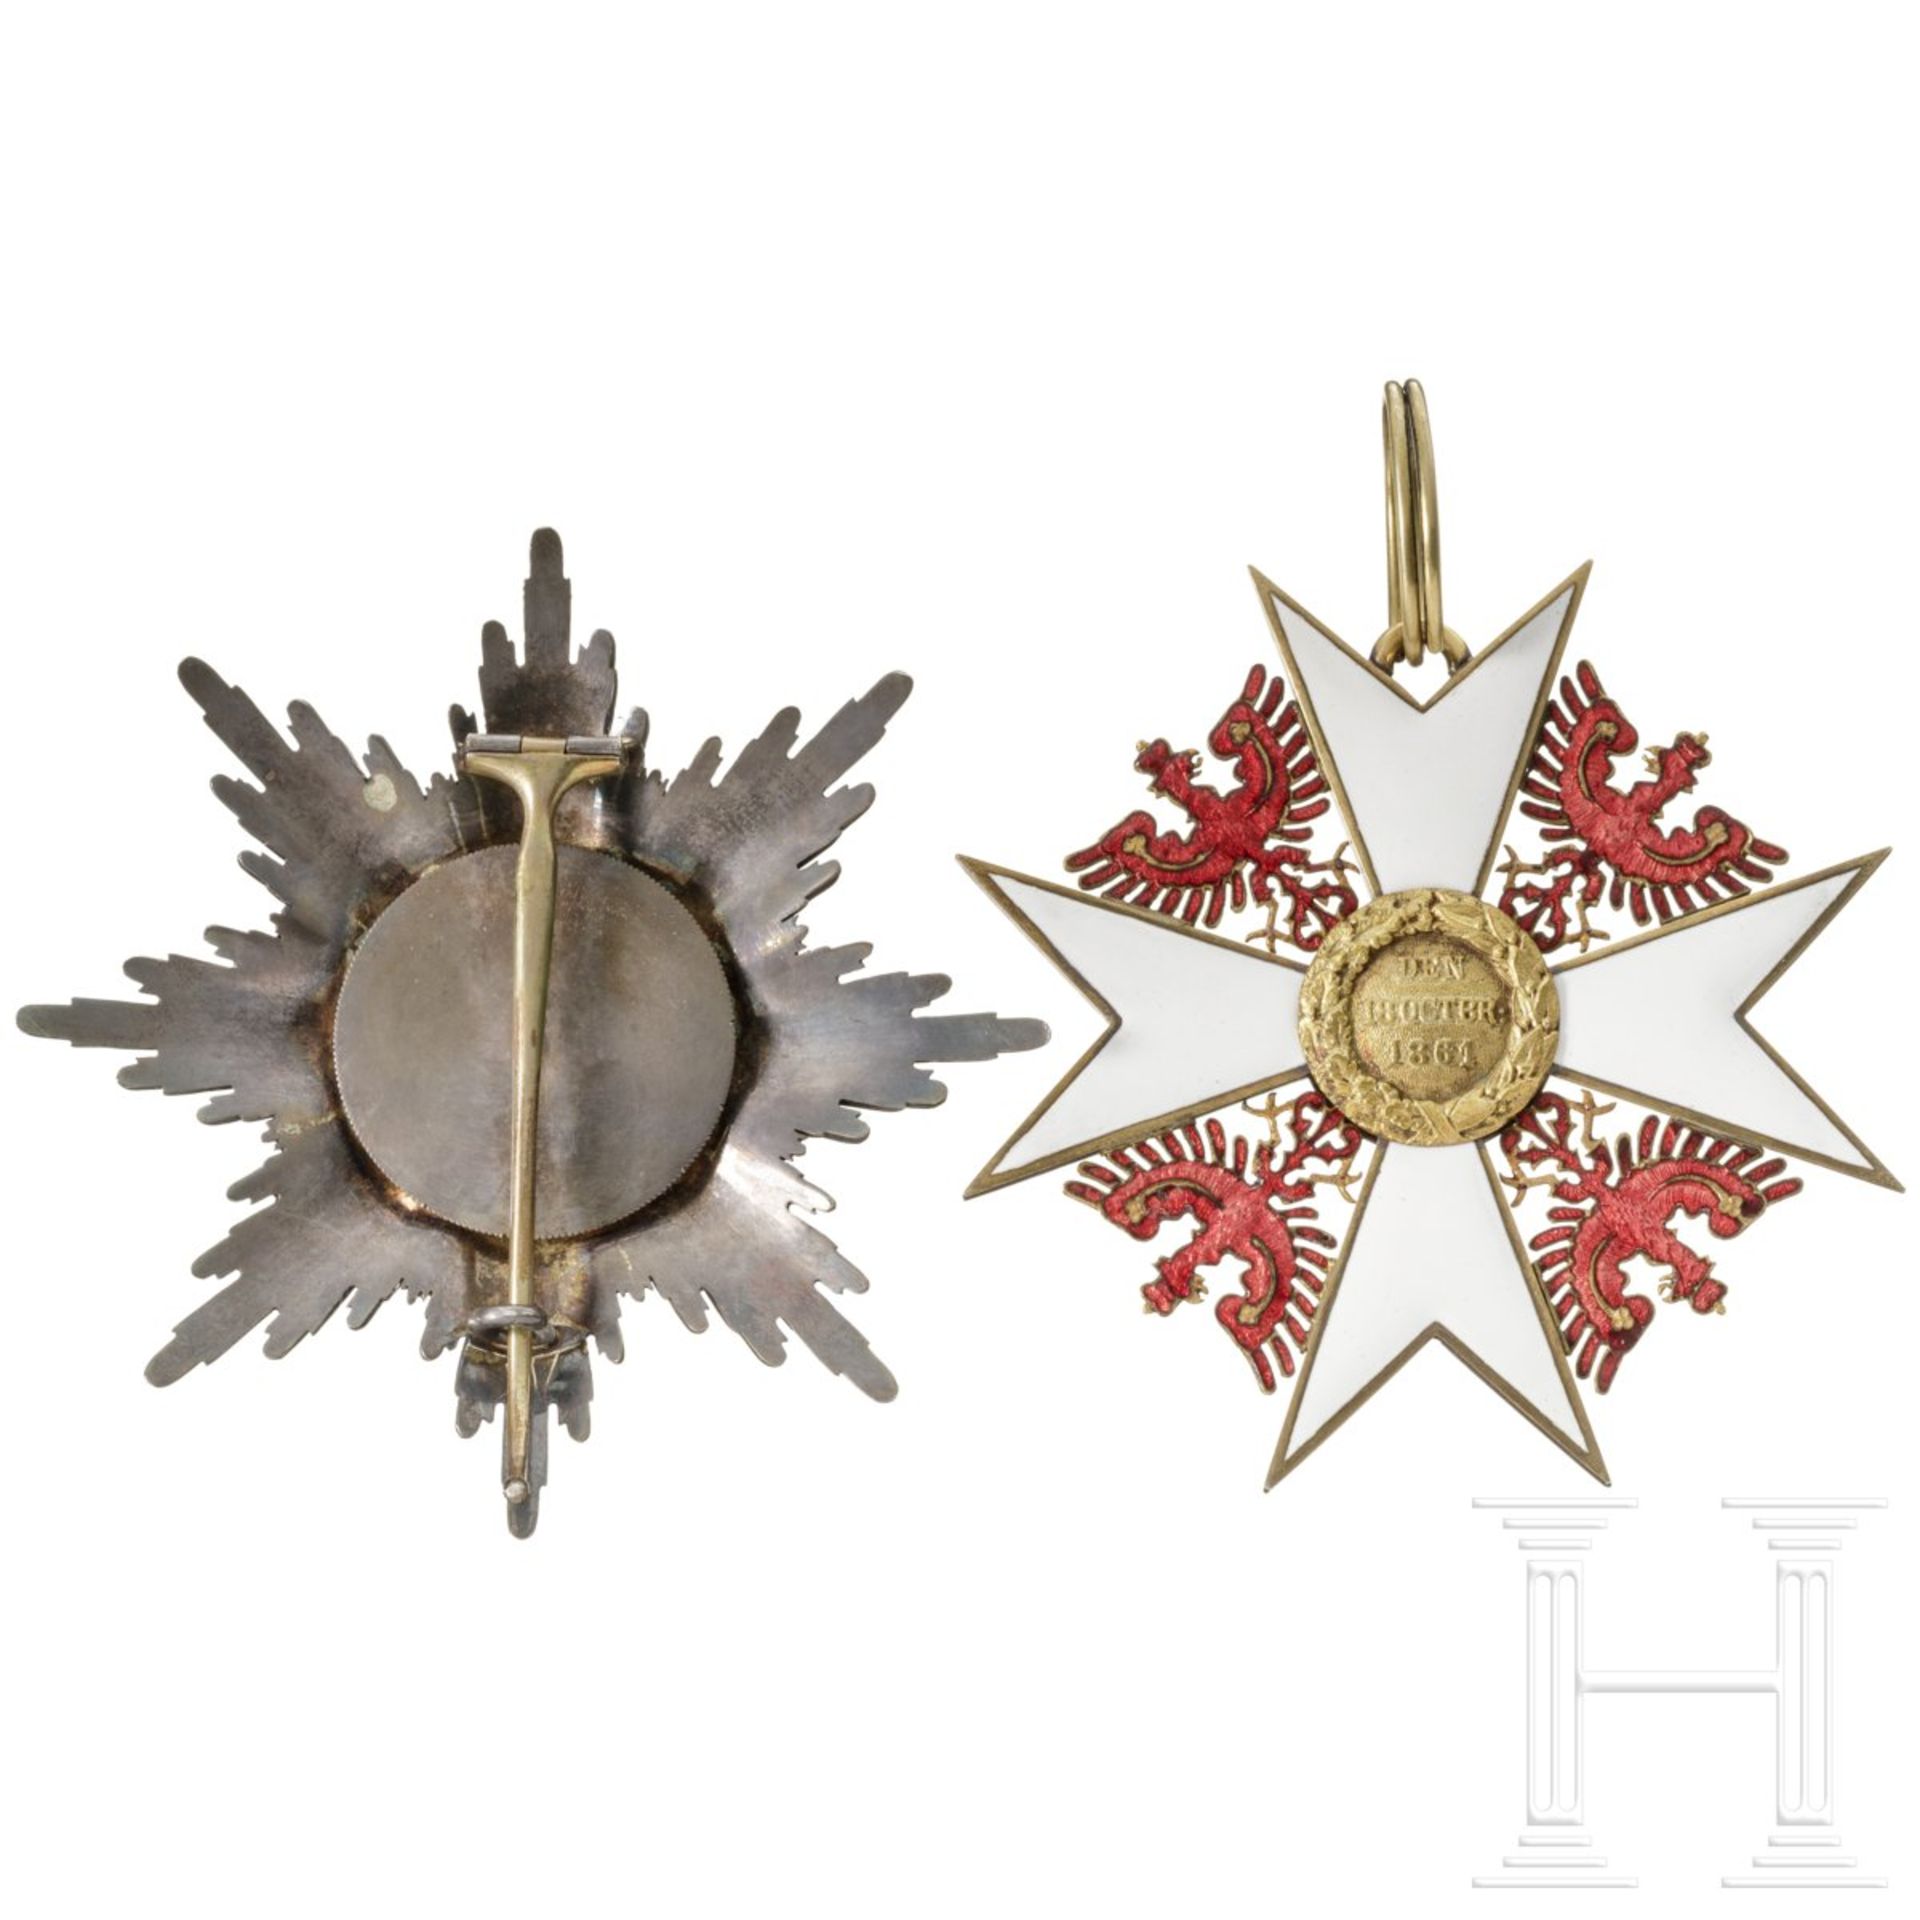 Roter Adler-Orden - Großkreuz und Bruststern zum Großkreuz - Bild 2 aus 3